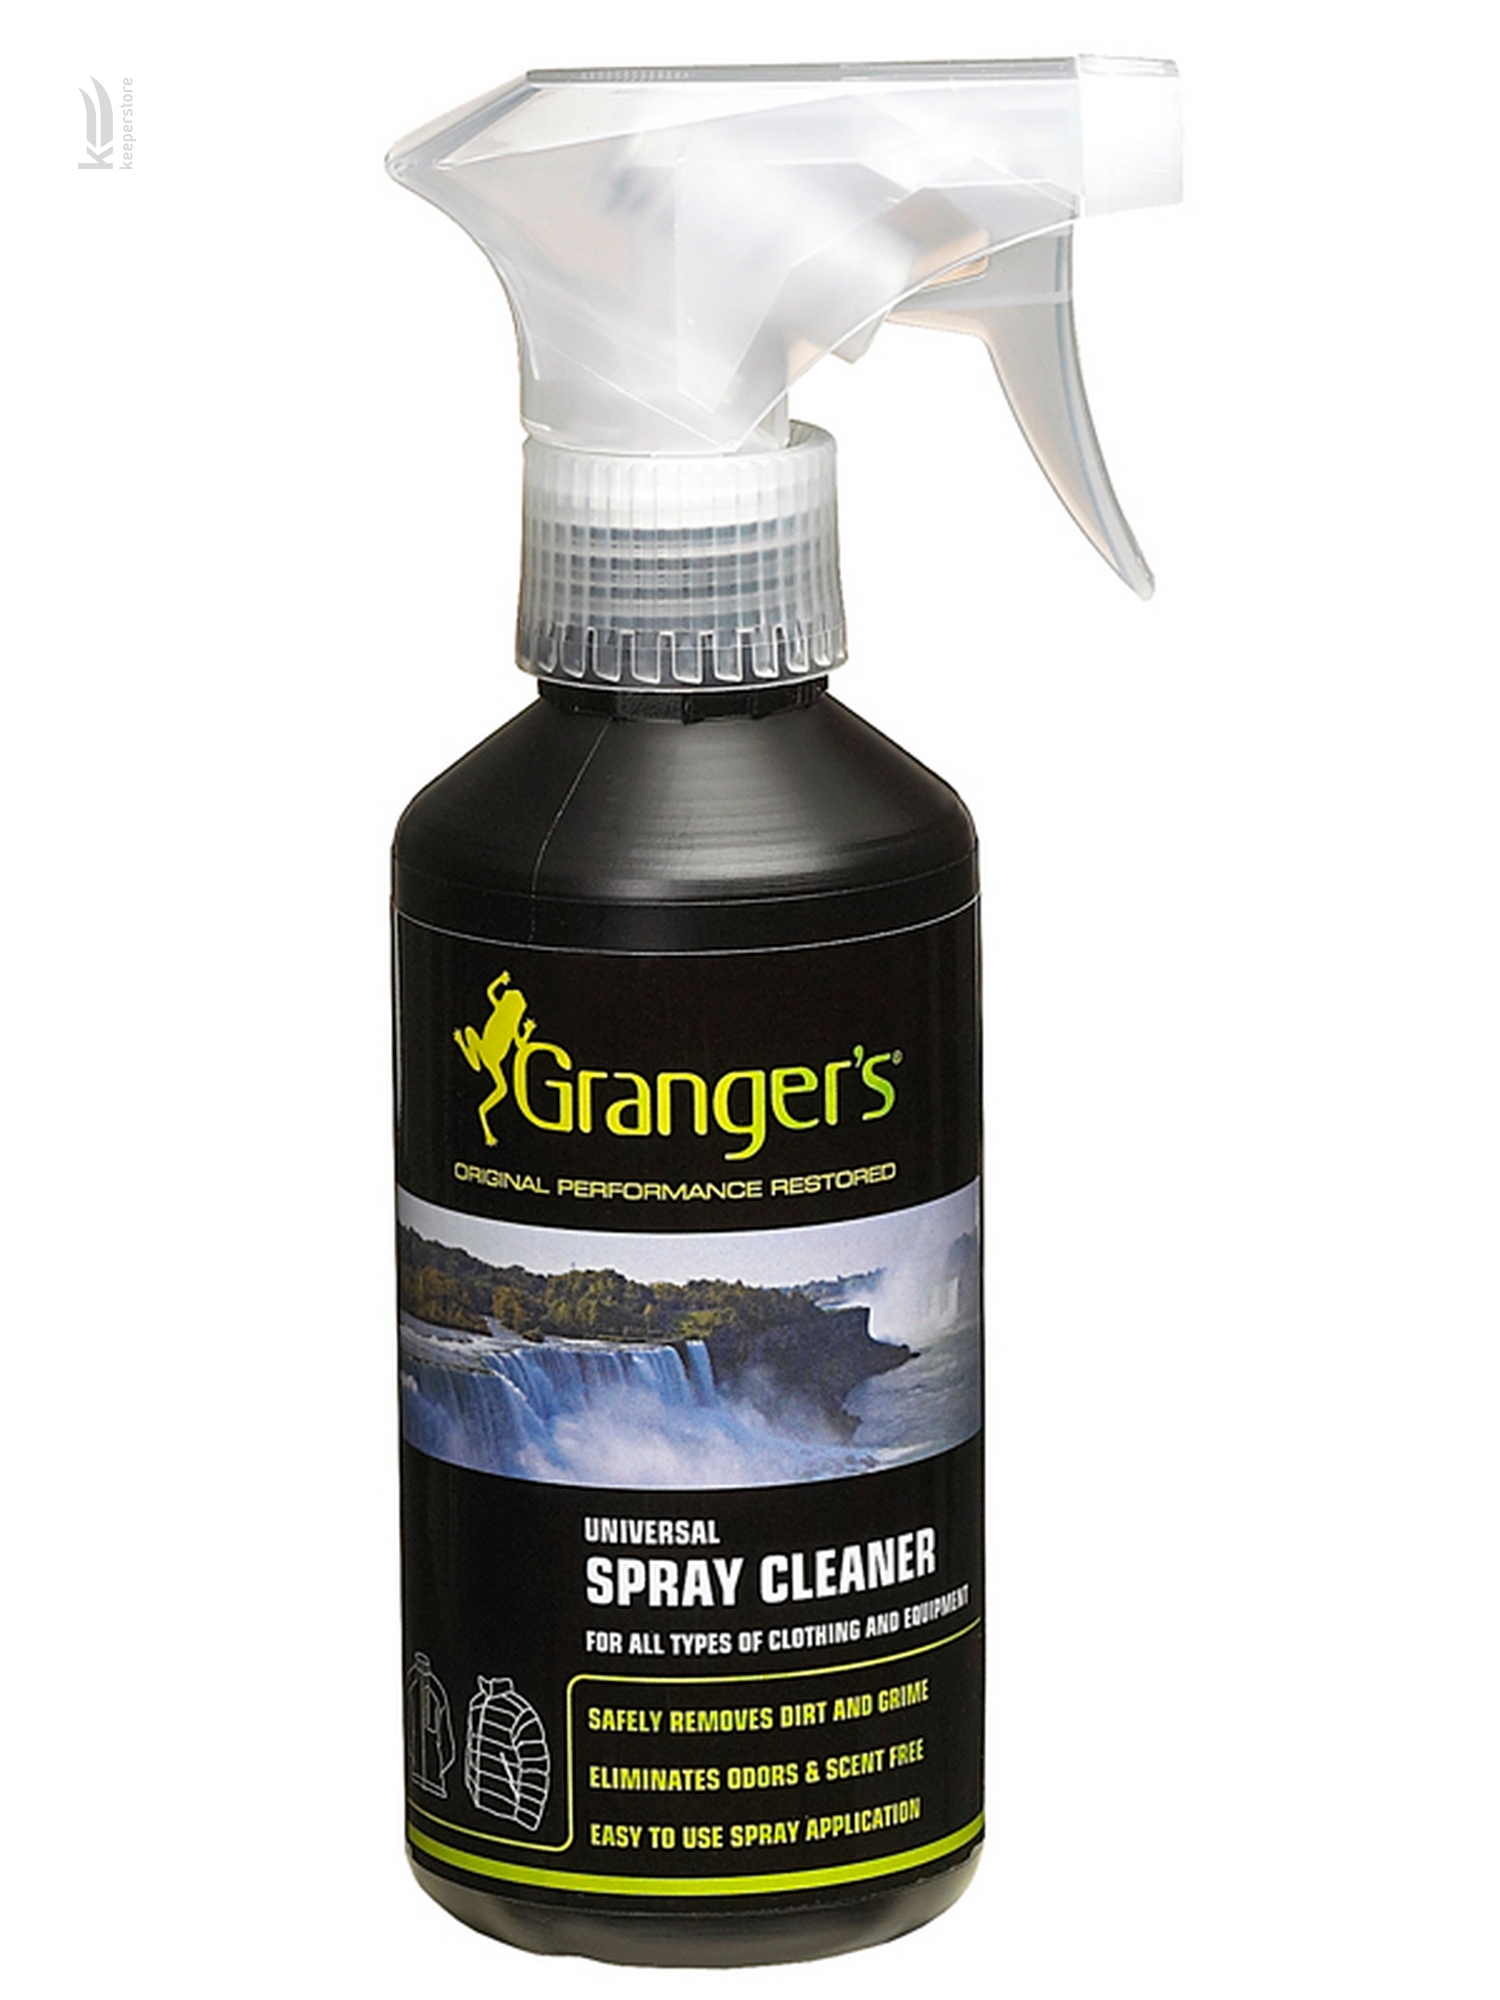 Цена спрэй для очистки одежды и снаряжения Granger's Universal Spray Cleaner 275 ml в Киеве